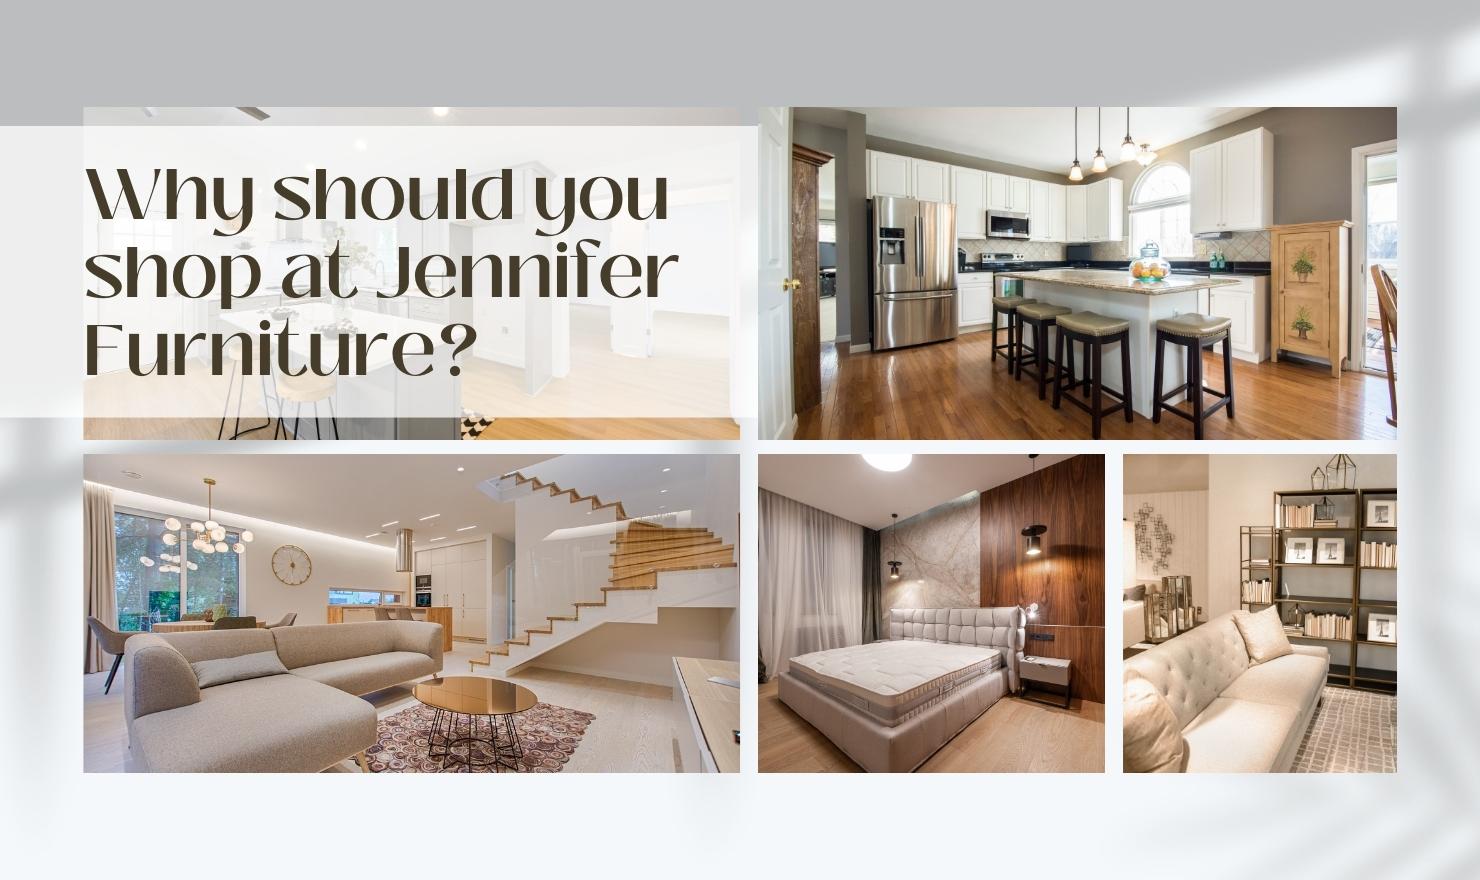 Why should you shop at Jennifer Furniture